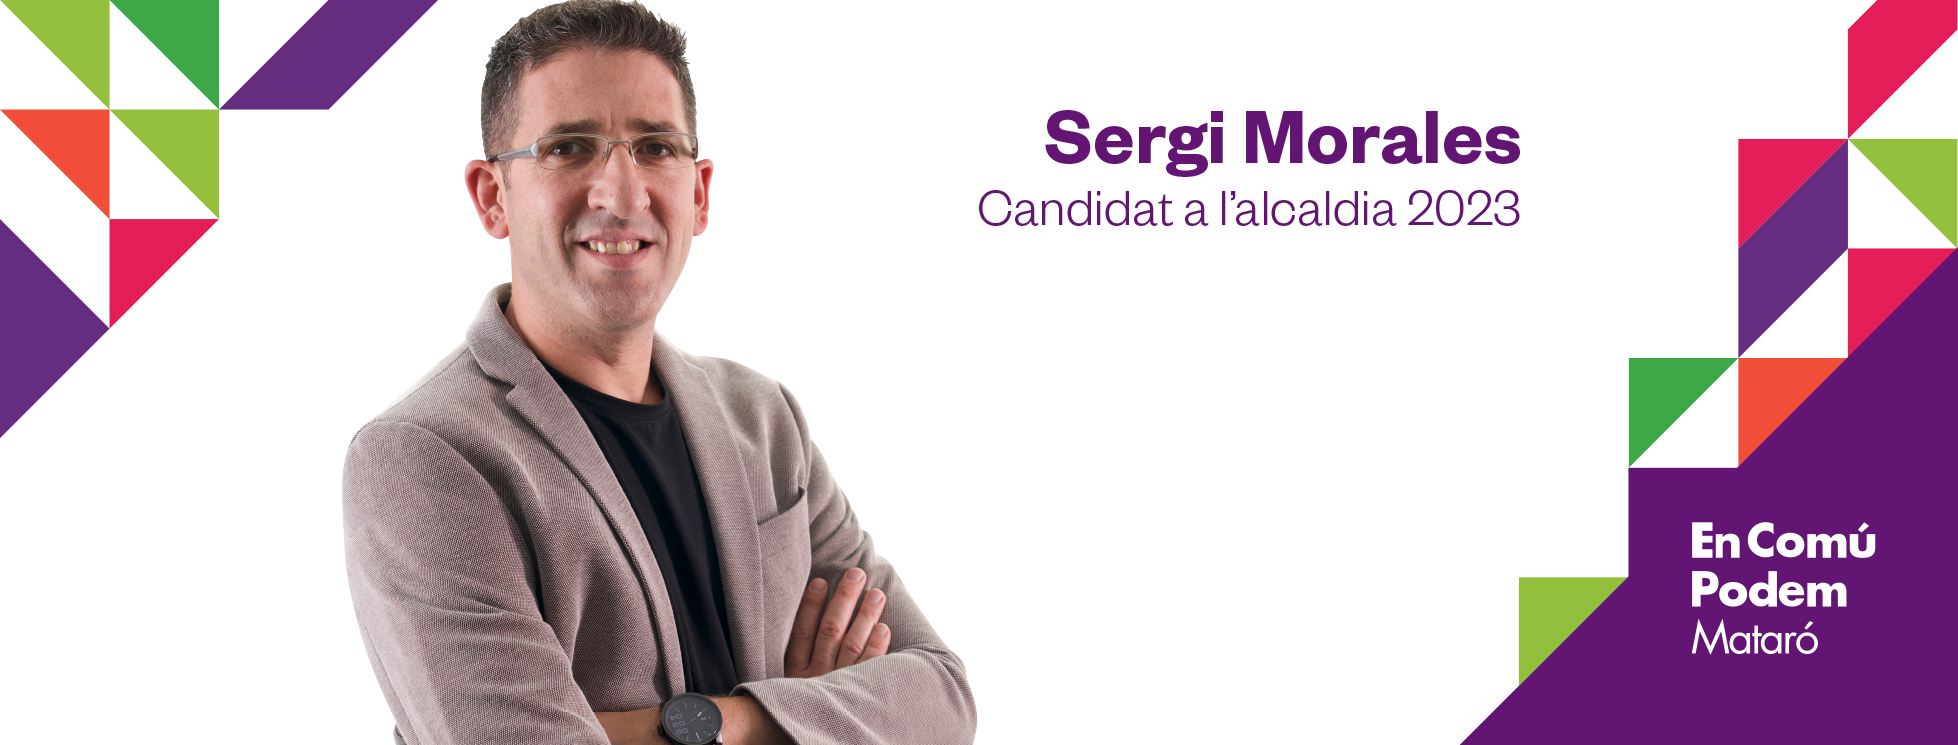 Sergi Morales, candidat a l'alcaldia